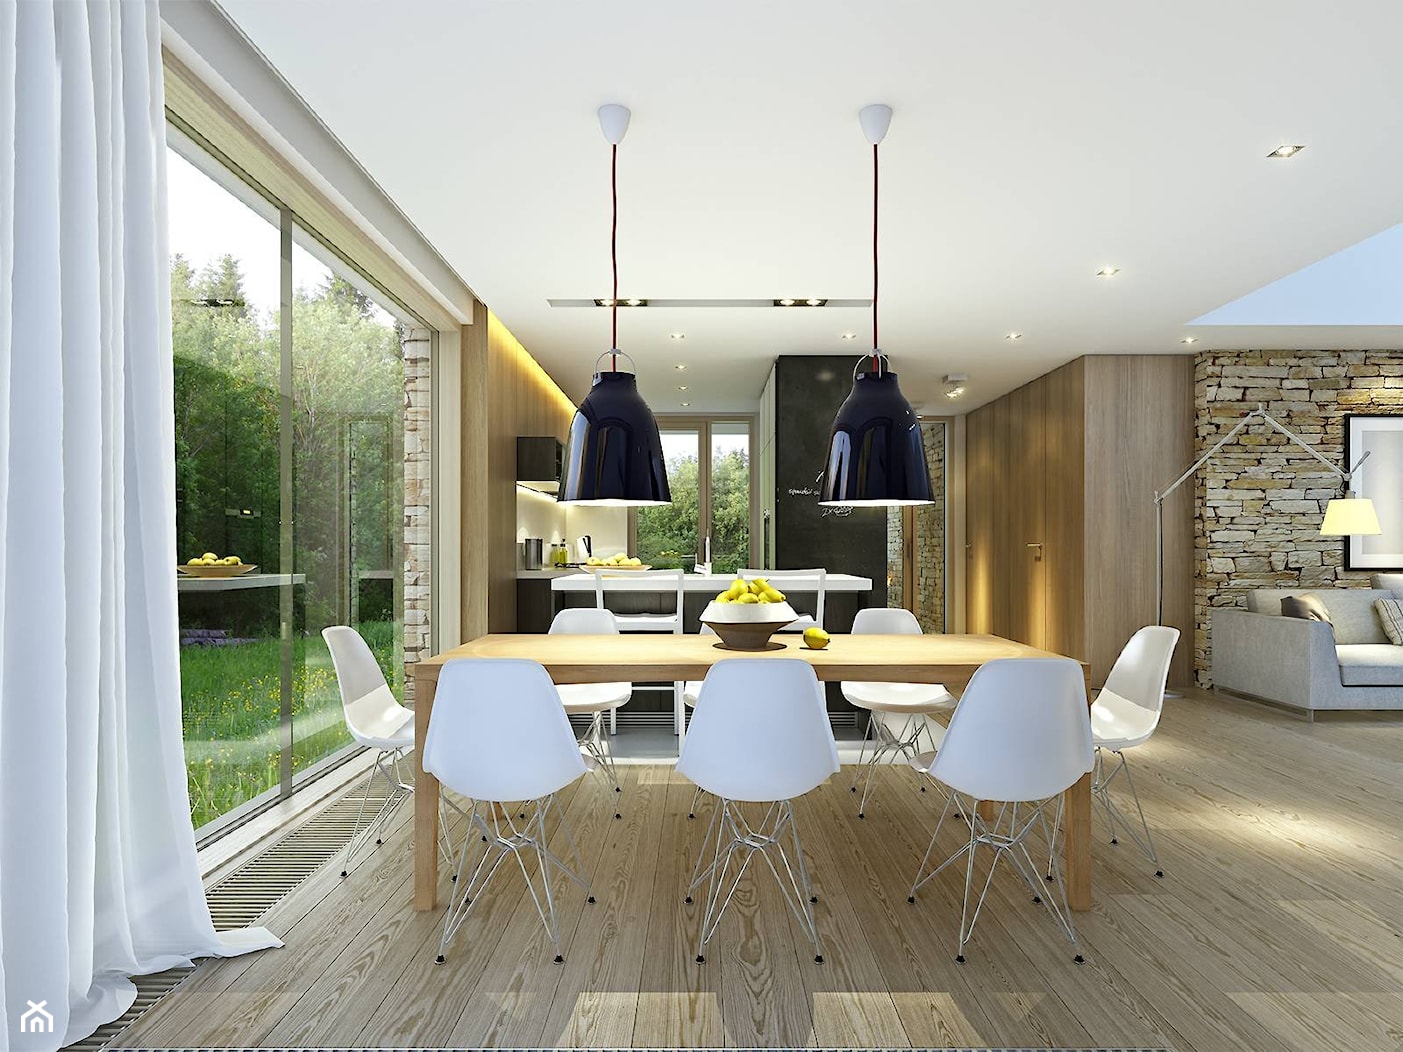 RODZINNY 1 - dom parterowy z dachem dwuspadowym - Średnia jadalnia w salonie, styl minimalistyczny - zdjęcie od DOMY Z WIZJĄ - nowoczesne projekty domów - Homebook